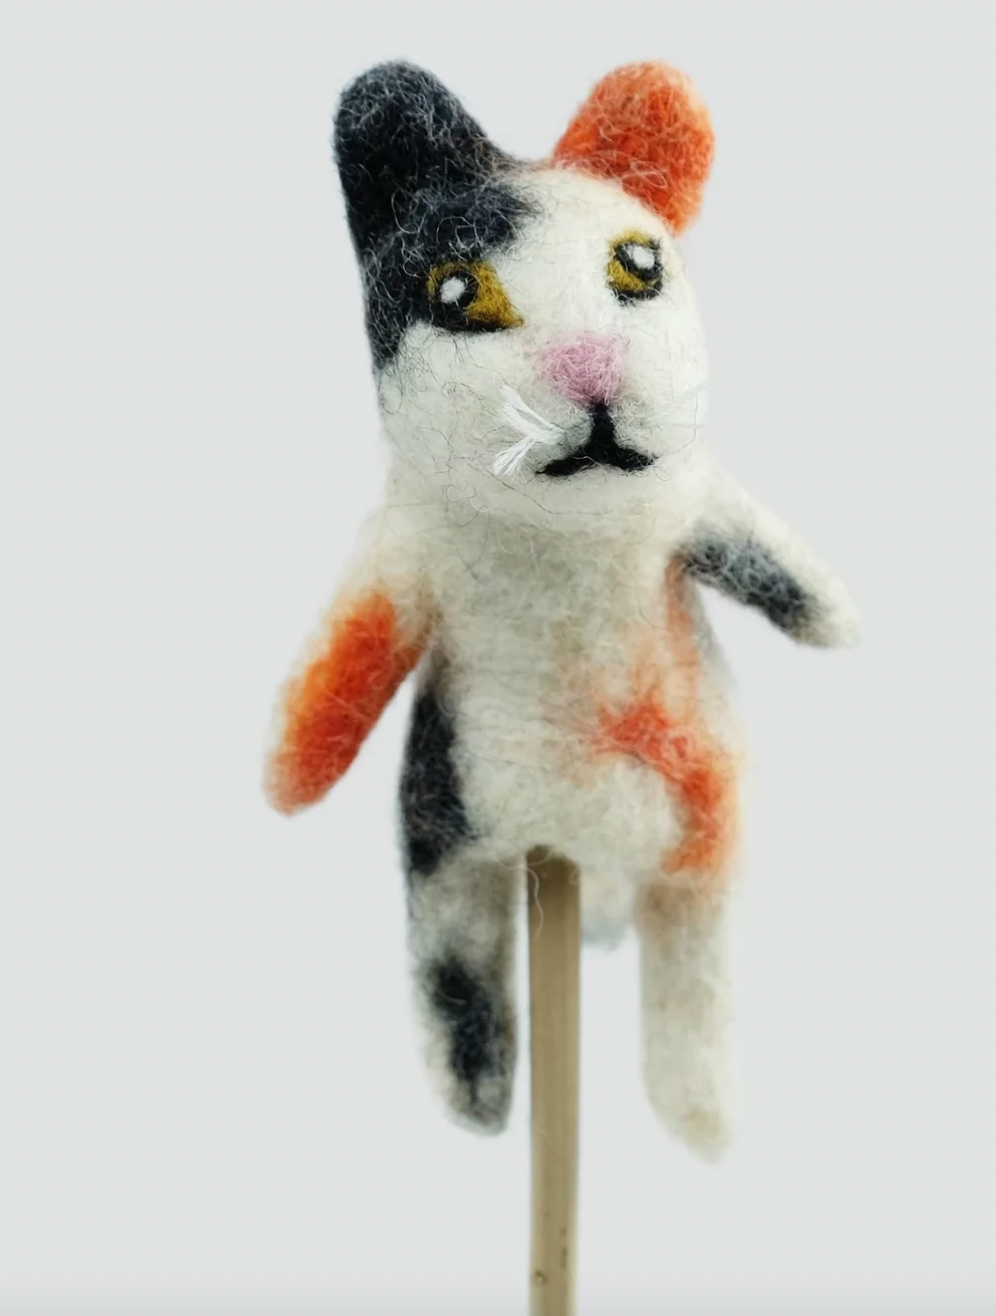 The Winding Road Felt Finger Puppet Black/White/Orange Cat